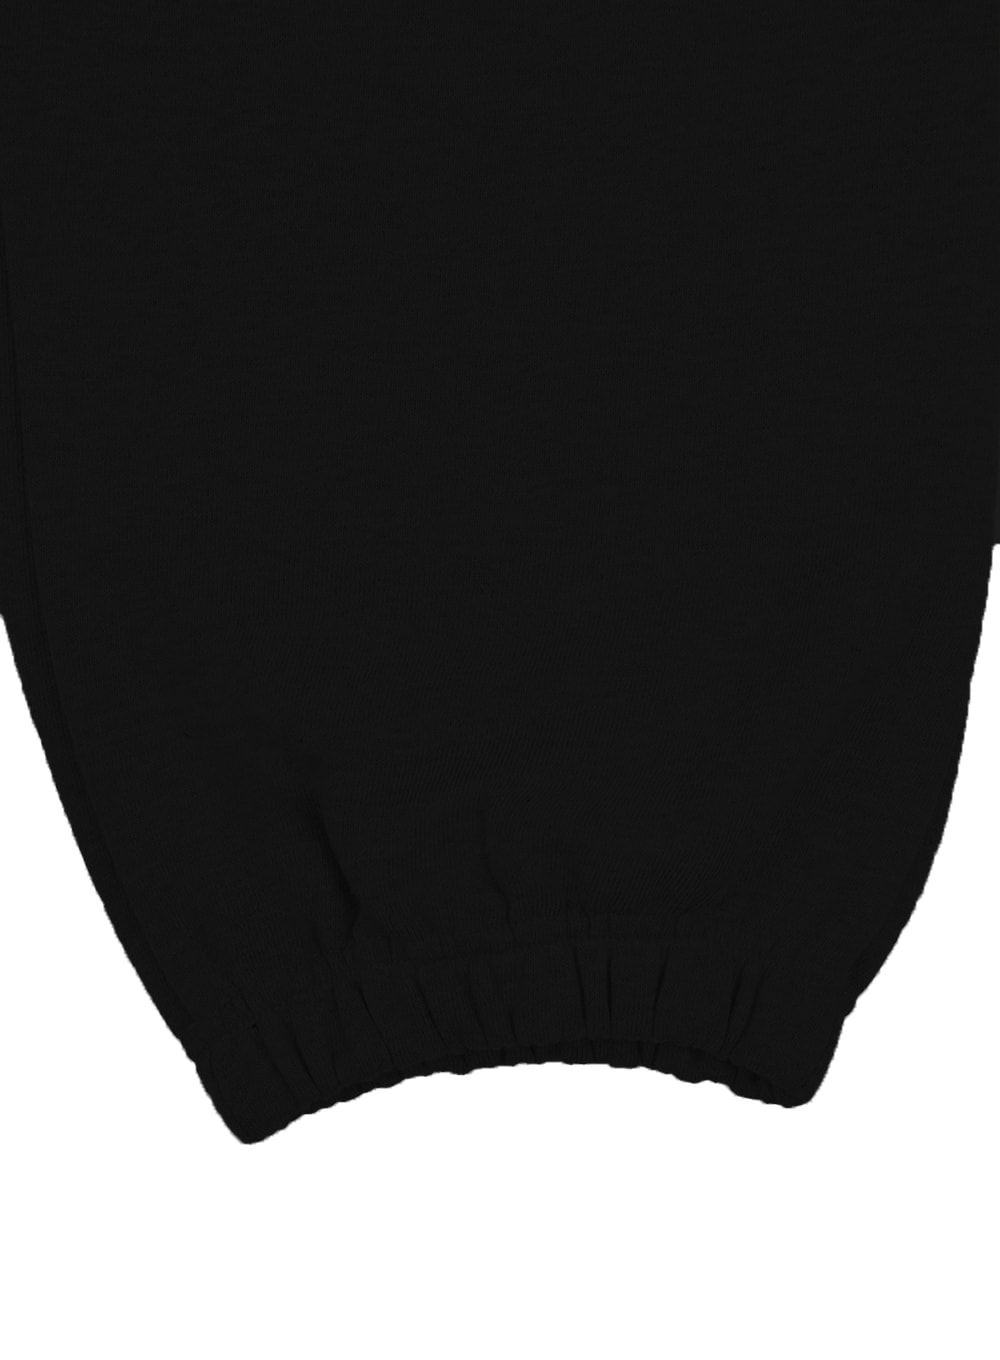 mens-basic-sweatpants-ia402-black